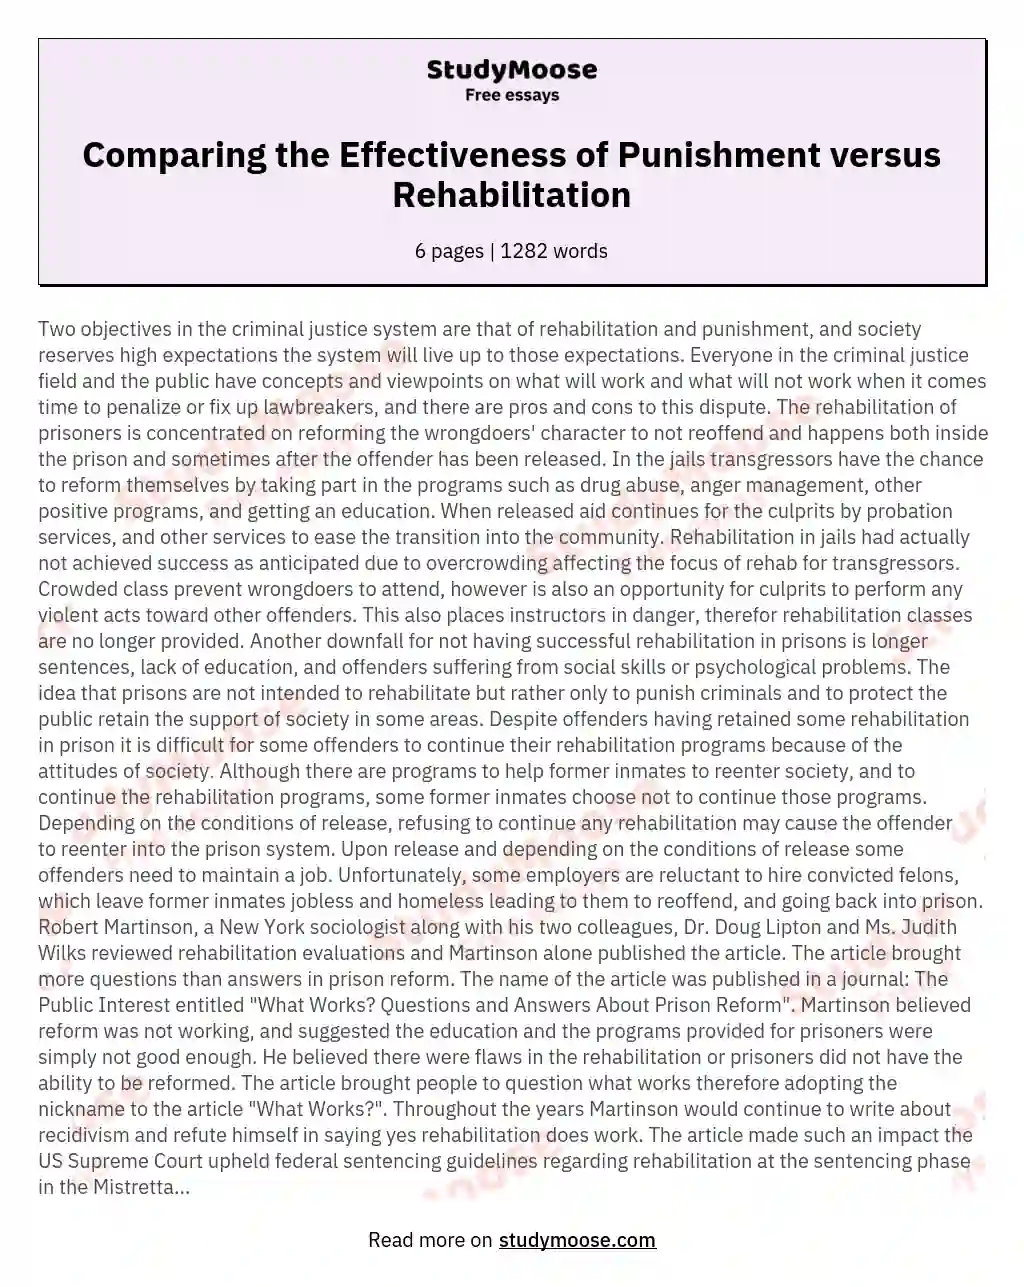 Comparing the Effectiveness of Punishment versus Rehabilitation